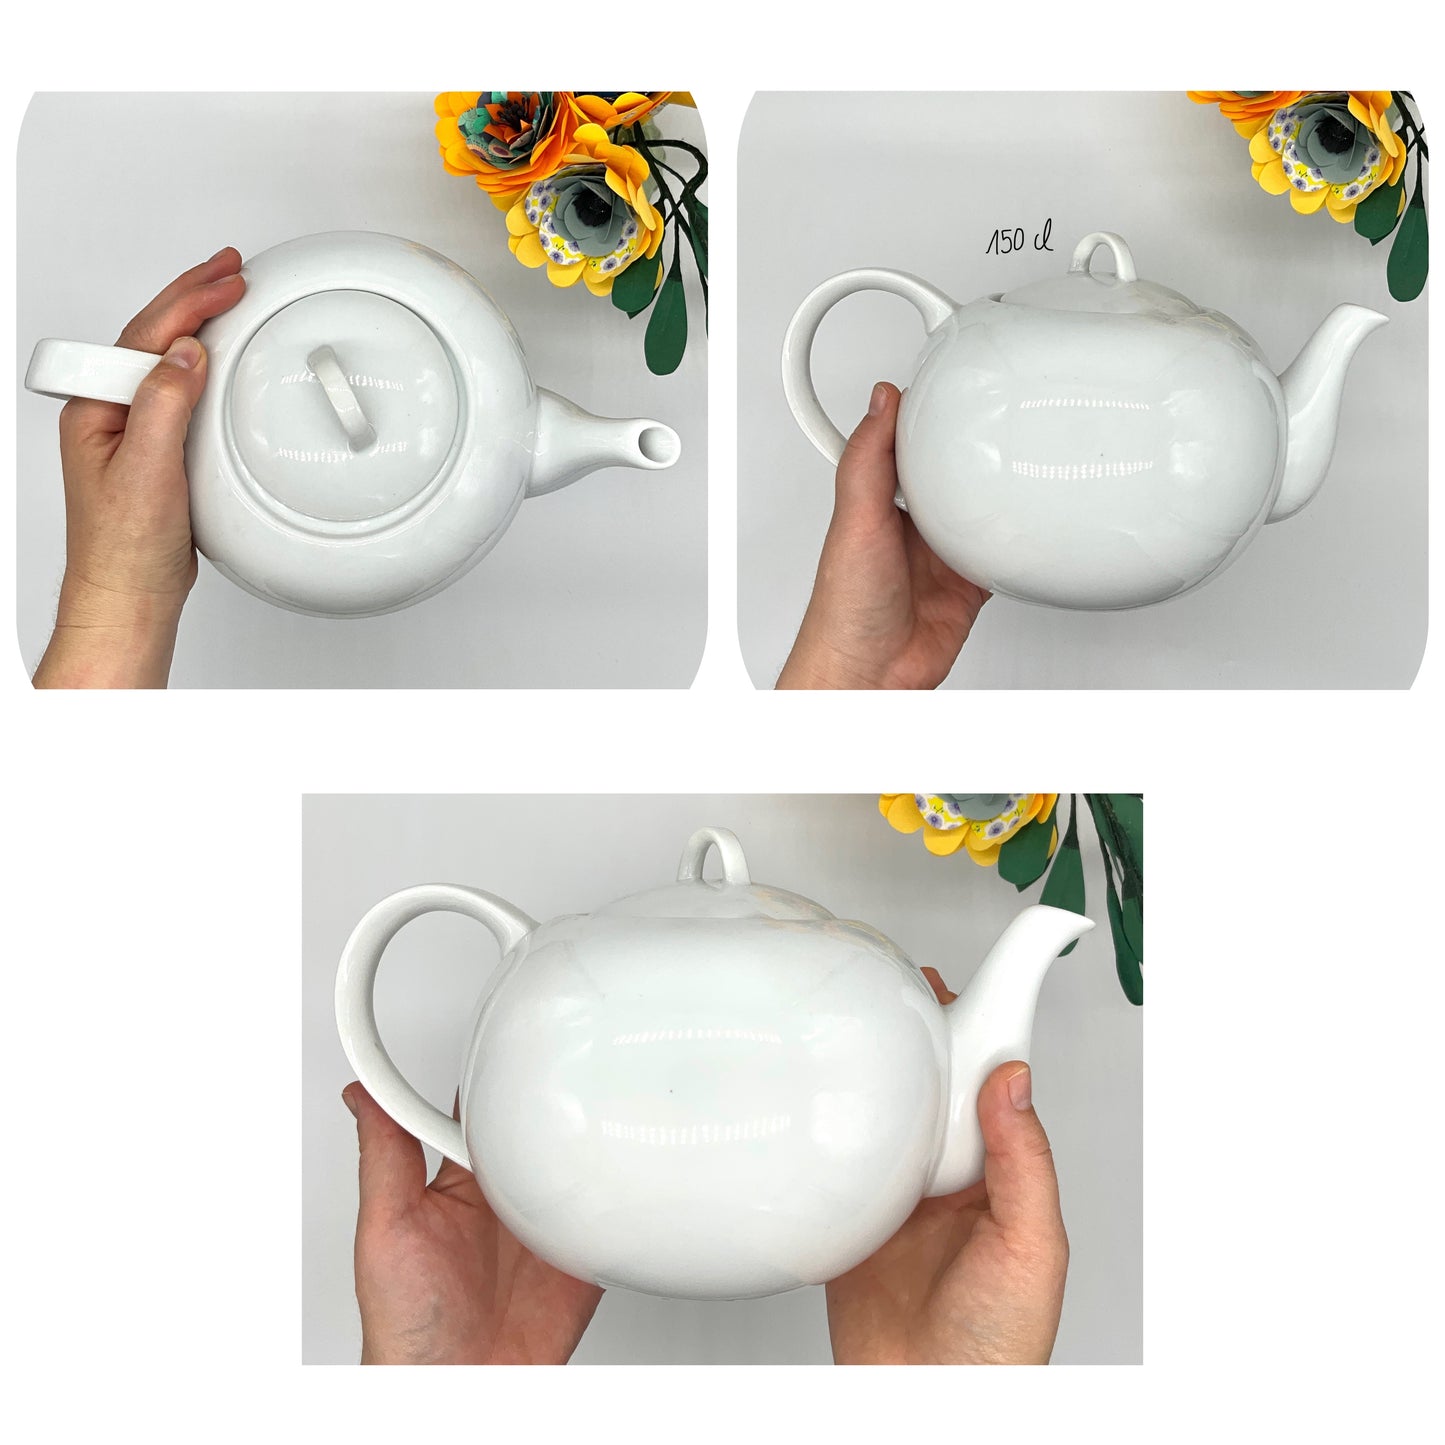 Commande porcelaine, envie d'un mug personnalisé ou original